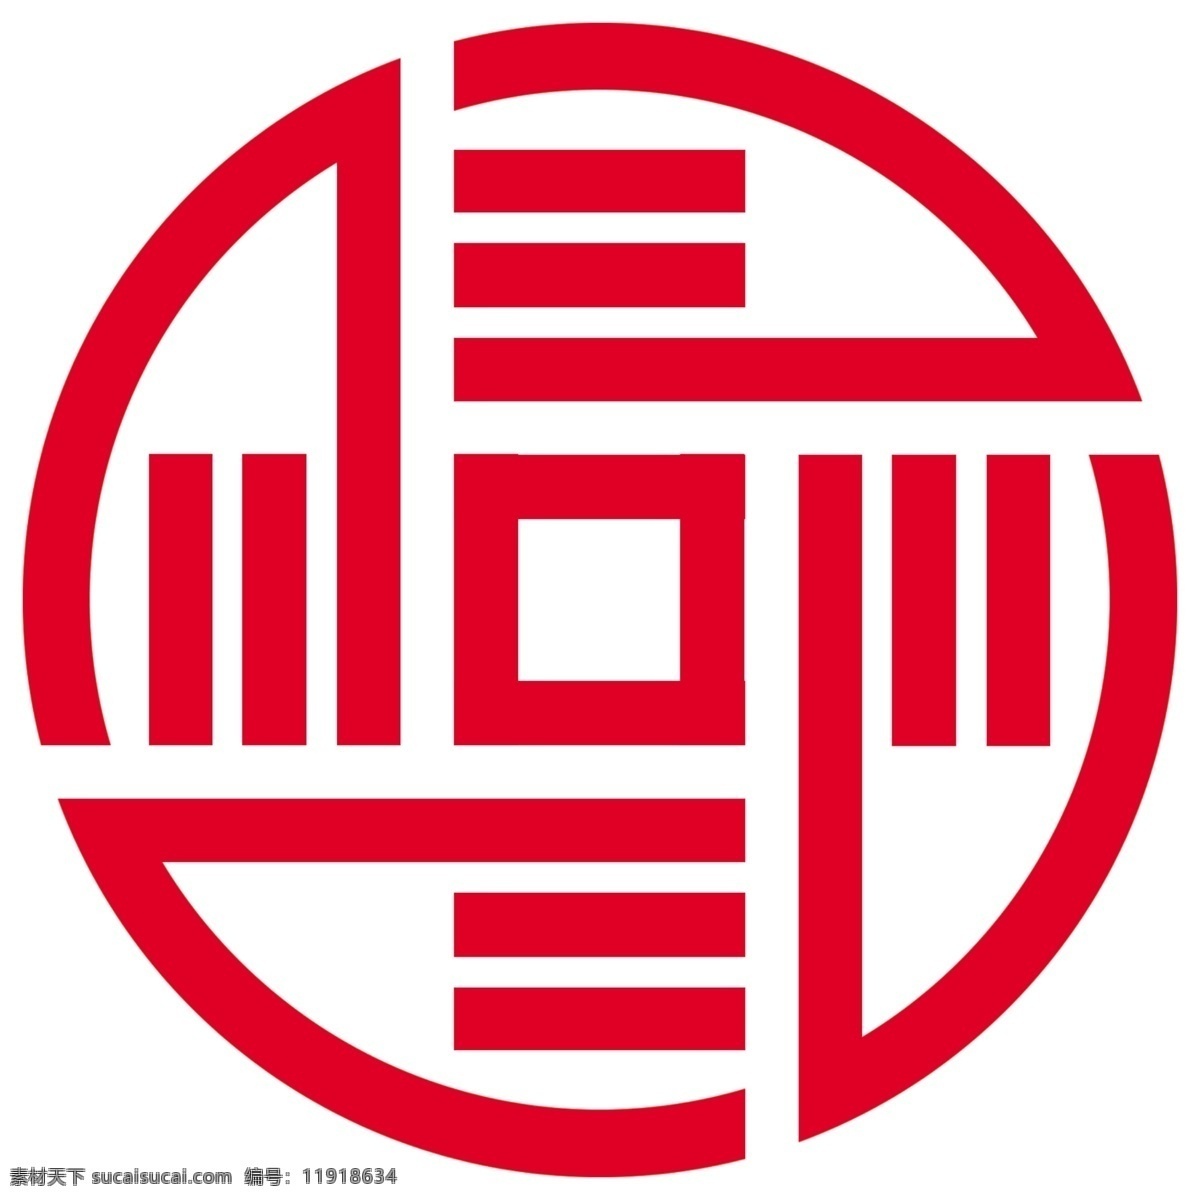 人民银行 征信 中心 logo 银行 征信中心 图标 分层